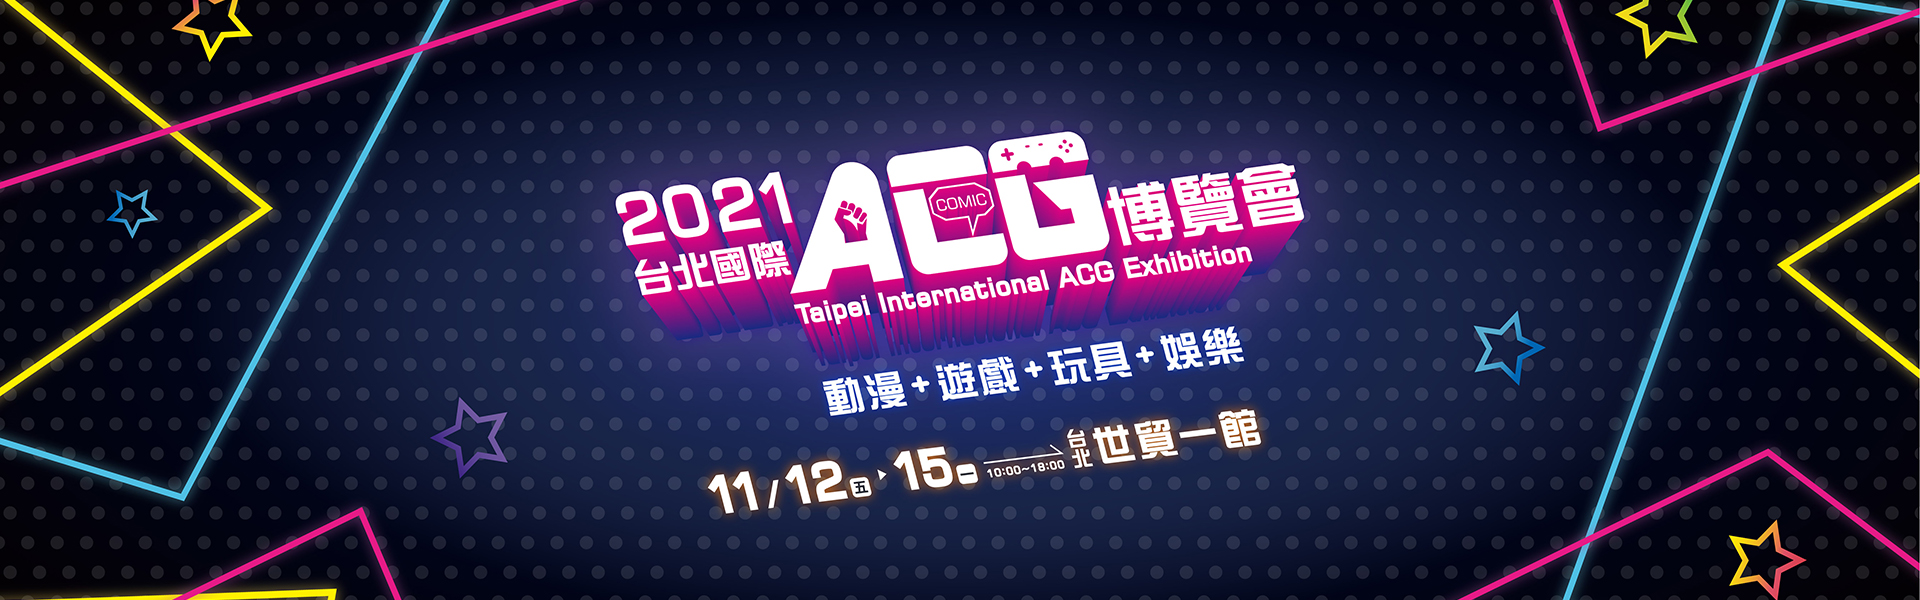 台北國際ACG博覽會-售票資訊